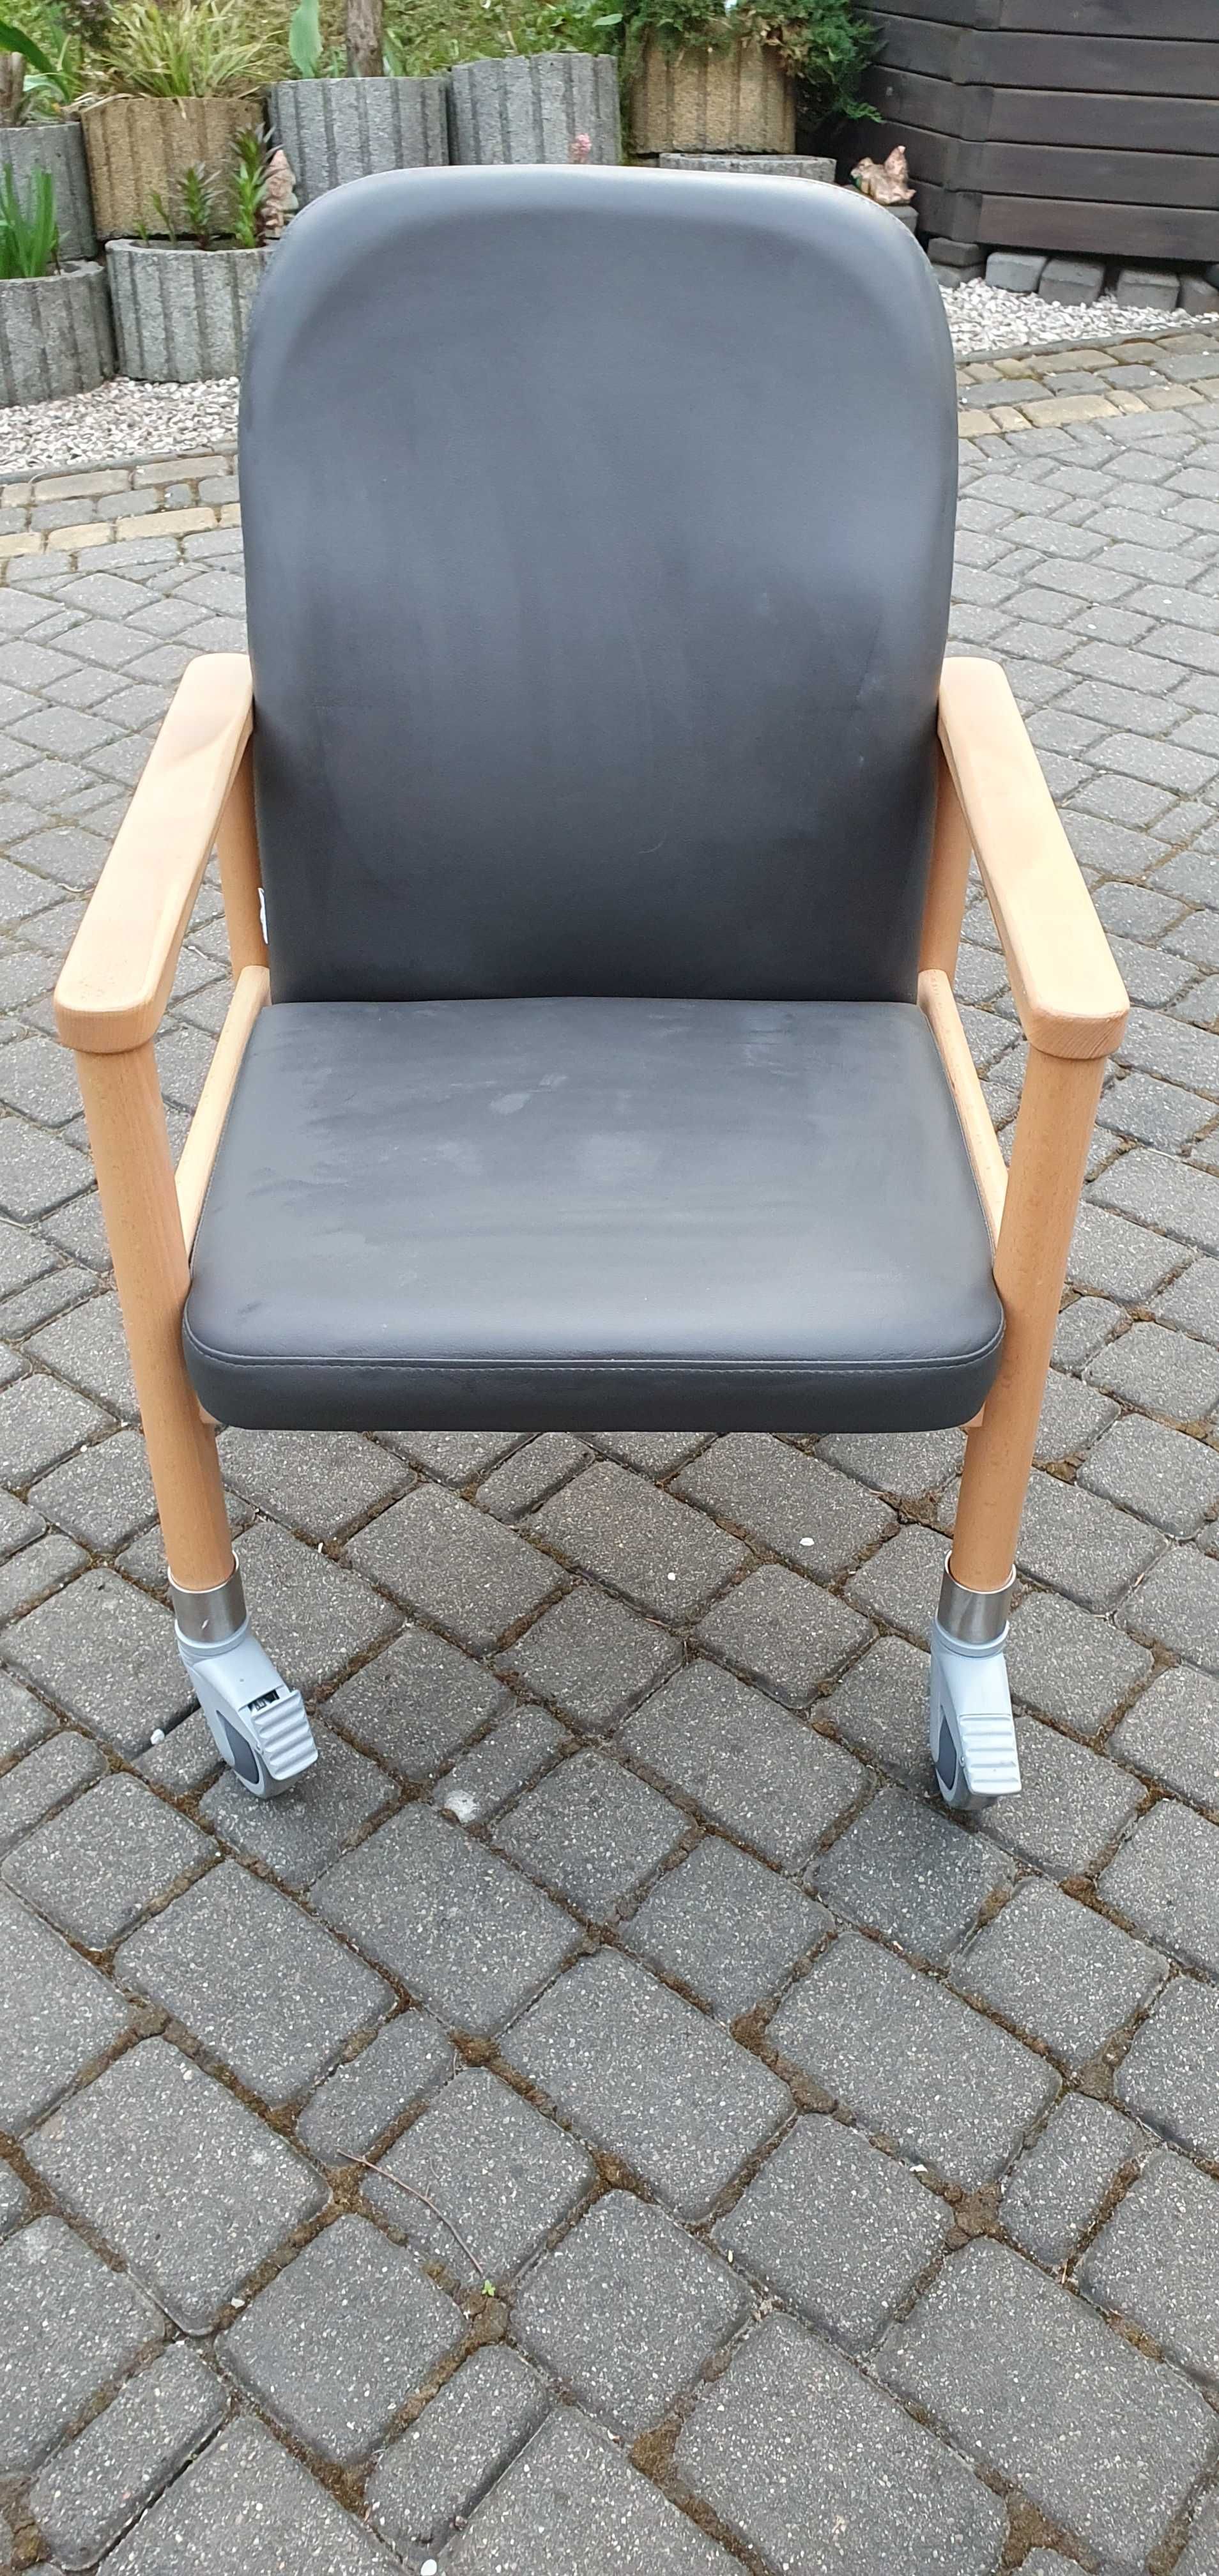 Fotel na kółkach dla niepełnosprawnych